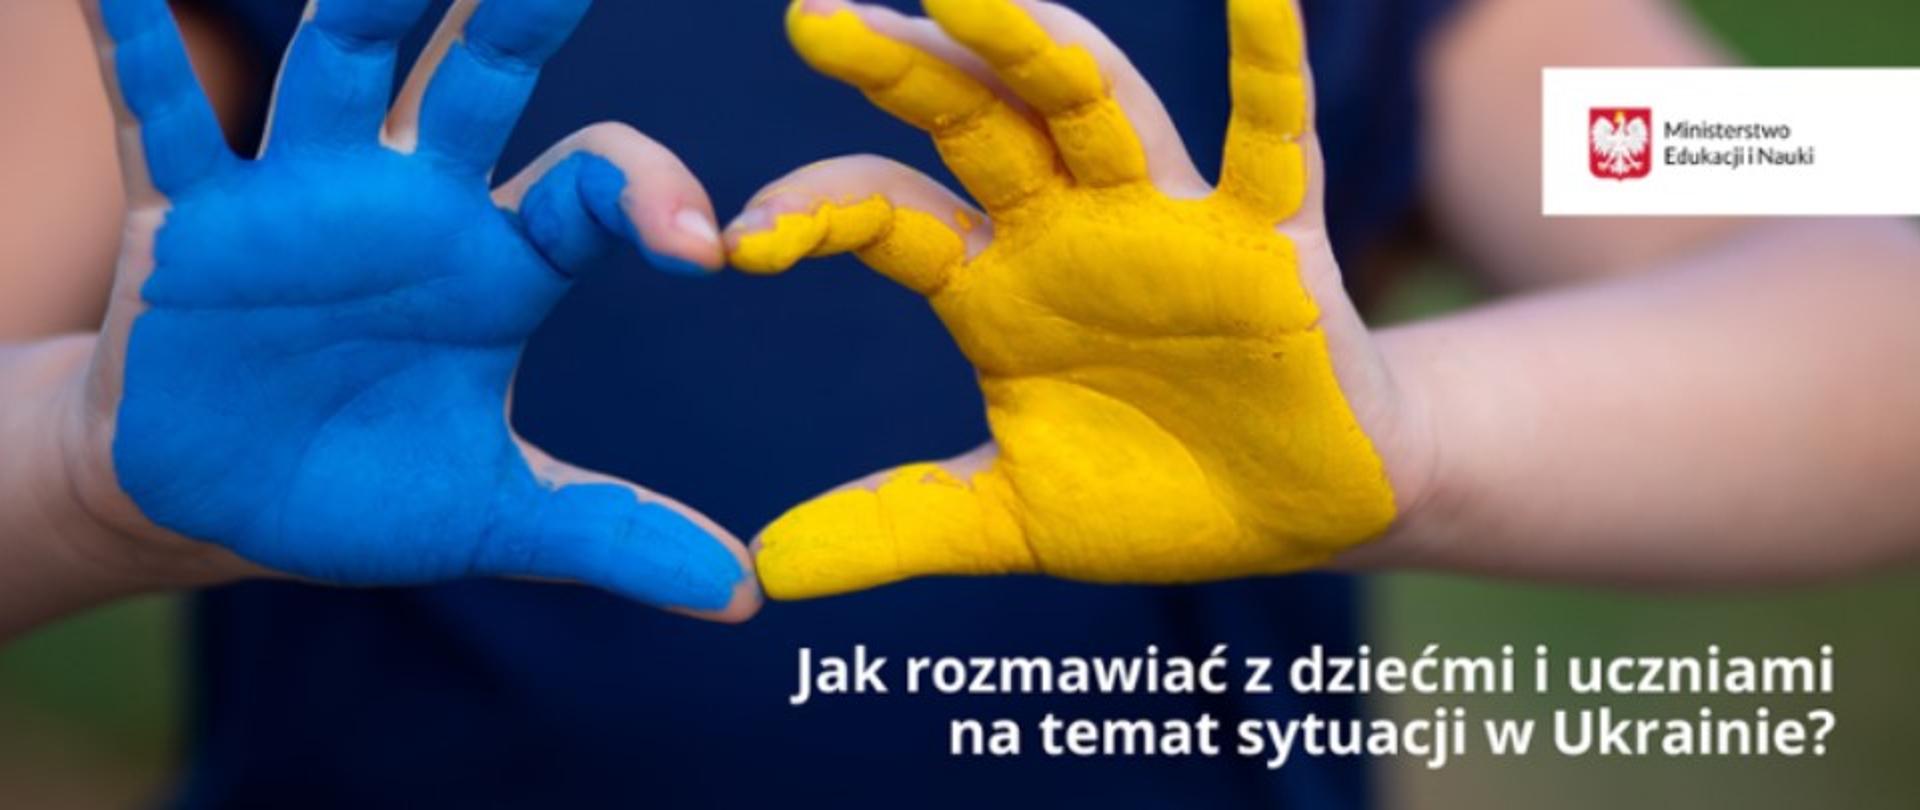 Plakat przedstawia otwarte dłonie dziecka - kciuki i palce wskazujące złożone w kształt serca. Spód lewej dłoni pokryty żółta farbą, prawej niebieską. Wszystko na tle granatowej koszulki dziecka. Z prawej strony w górnym rogu - logo MEN, poniżej napis: Jak rozmawiać z dziećmi i uczniami na temat sytuacji na Ukrainie. 